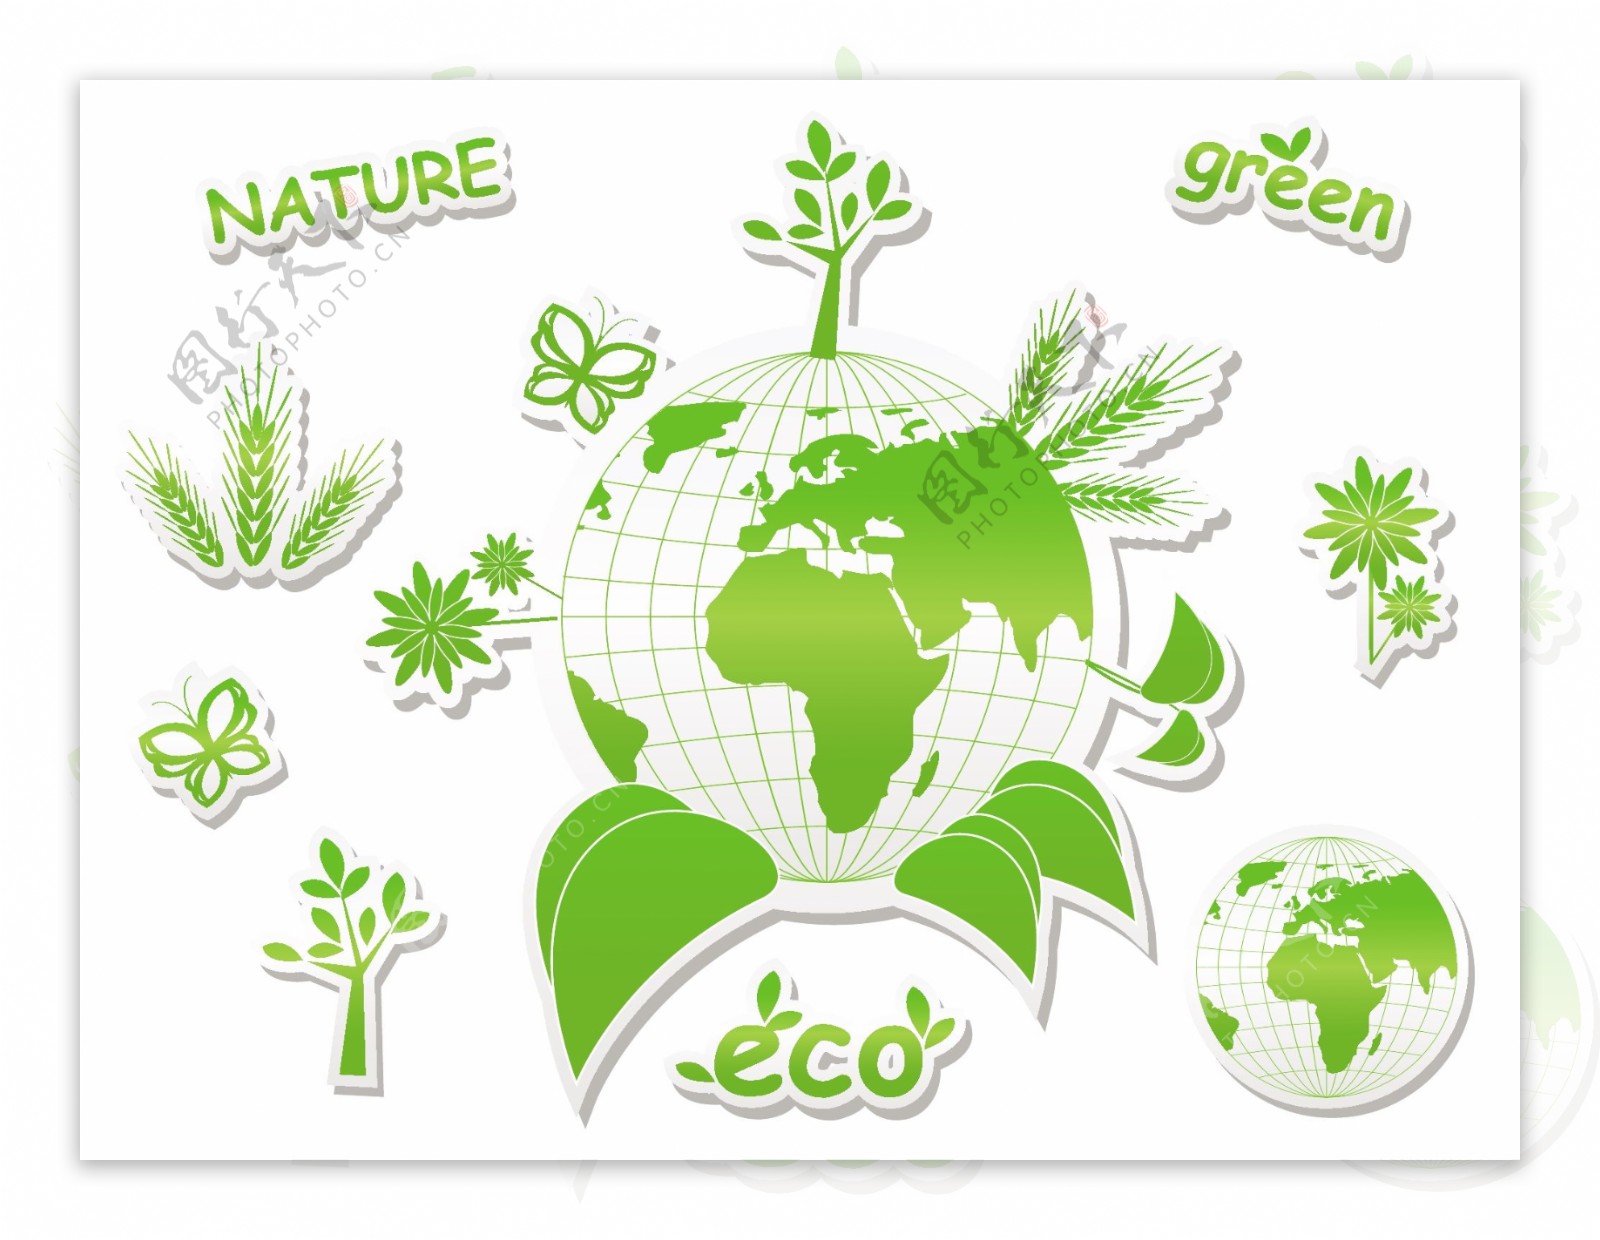 绿色环保图标矢量素材